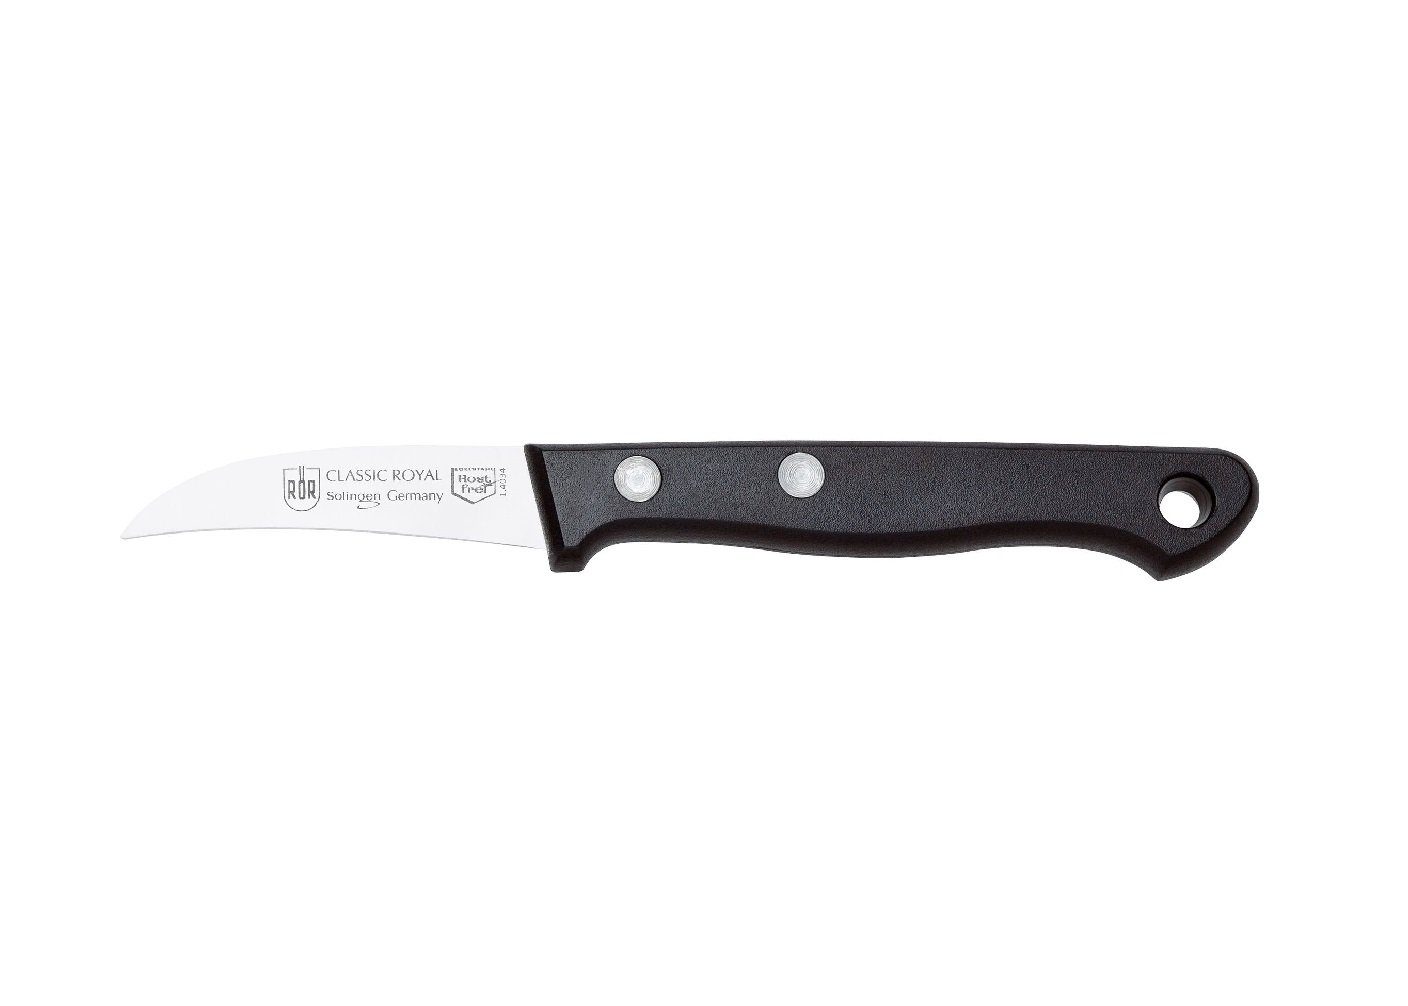 RÖR Schälmesser 10194, Classic Royal Schälmesser, hochwertiger Messerstahl - Griff mit Nieten - Made in Solingen